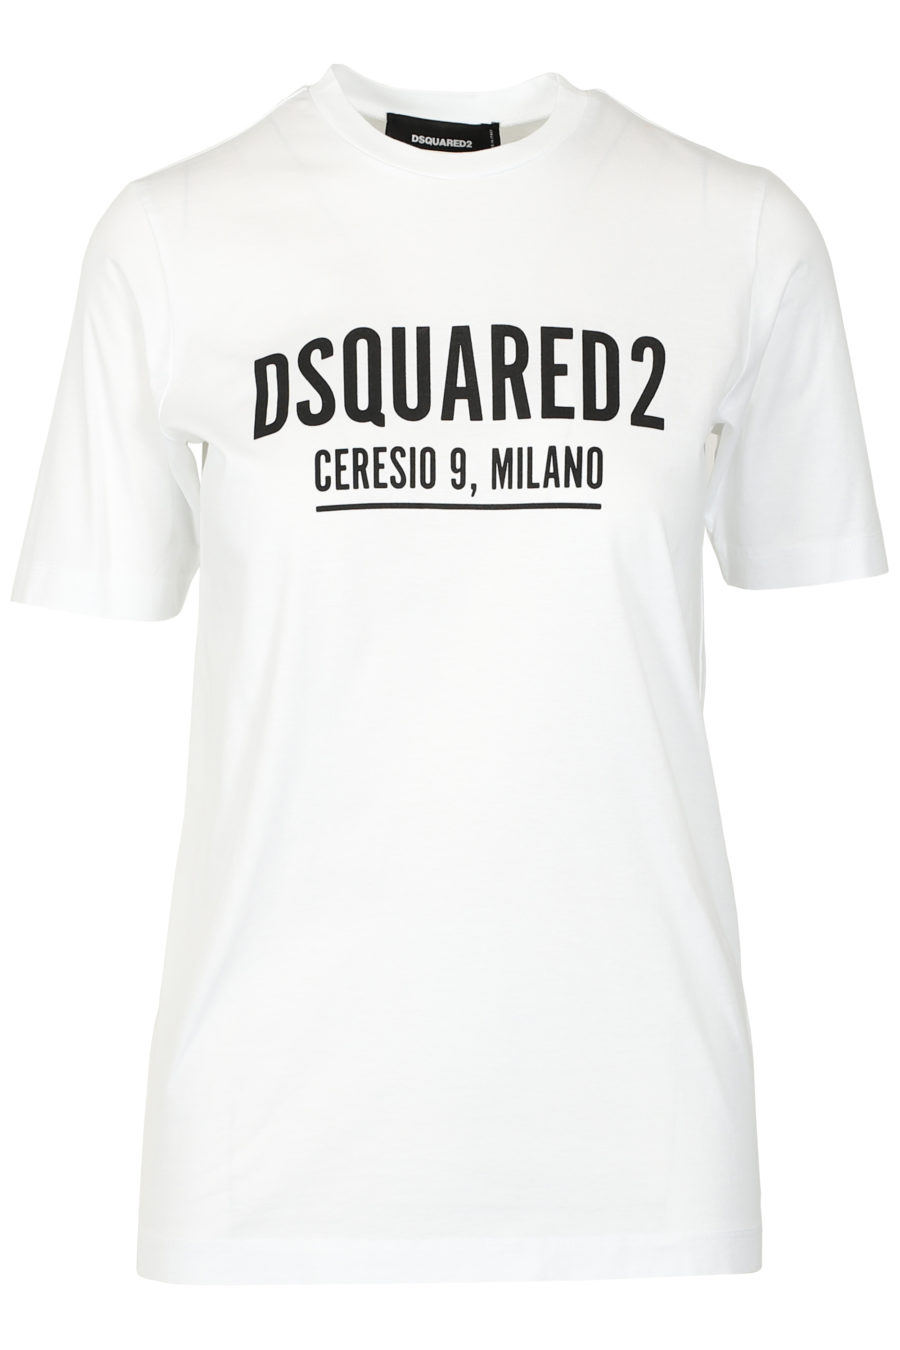 Ceresio Milano" white short-sleeved T-shirt - IMG 3274